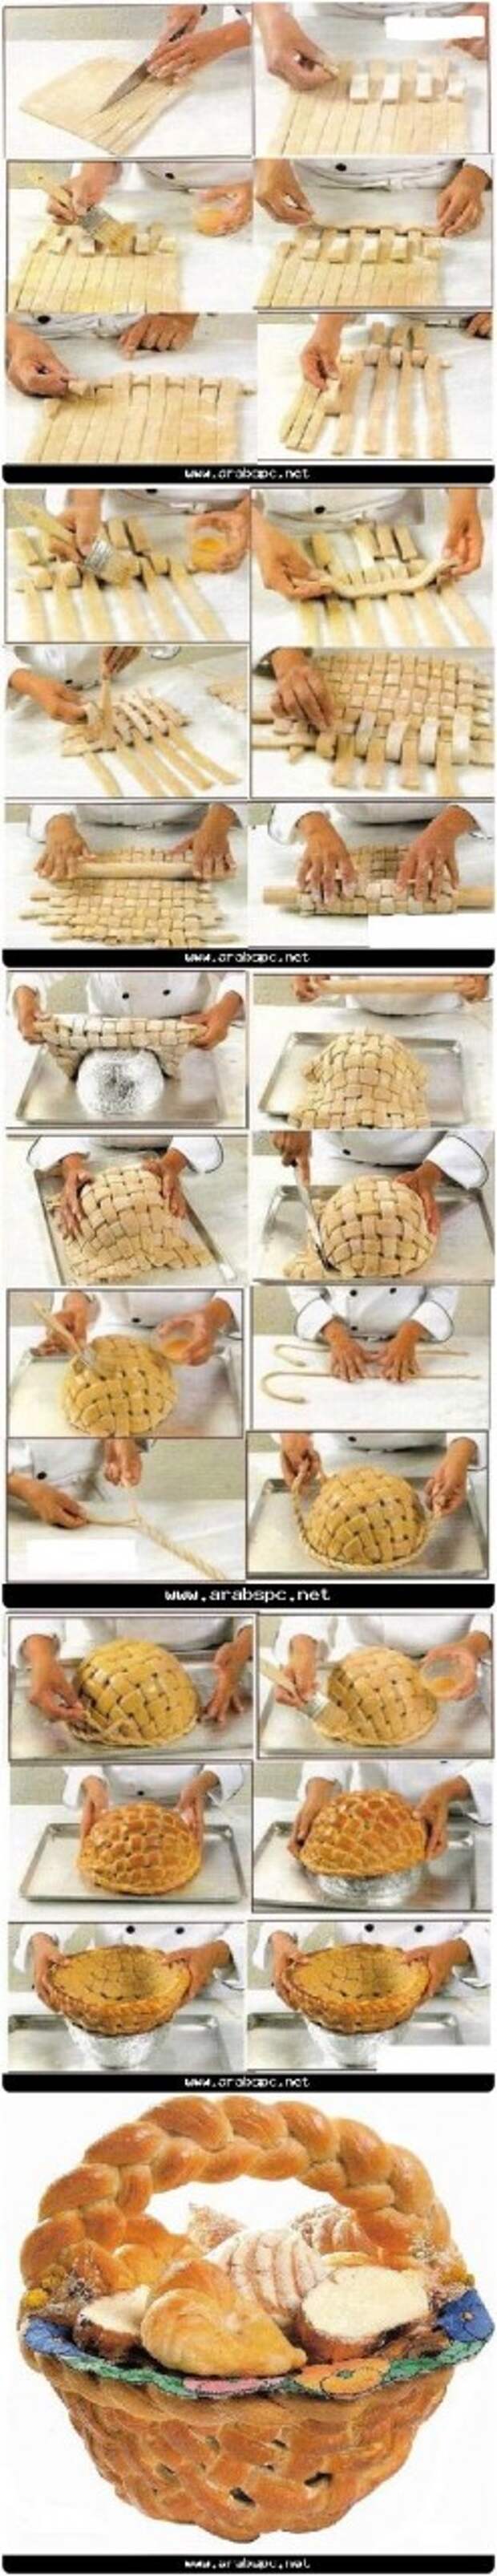 Cesto di #pane al forno completamente commestibile #Edible large basket, #bread, #tutorial: 